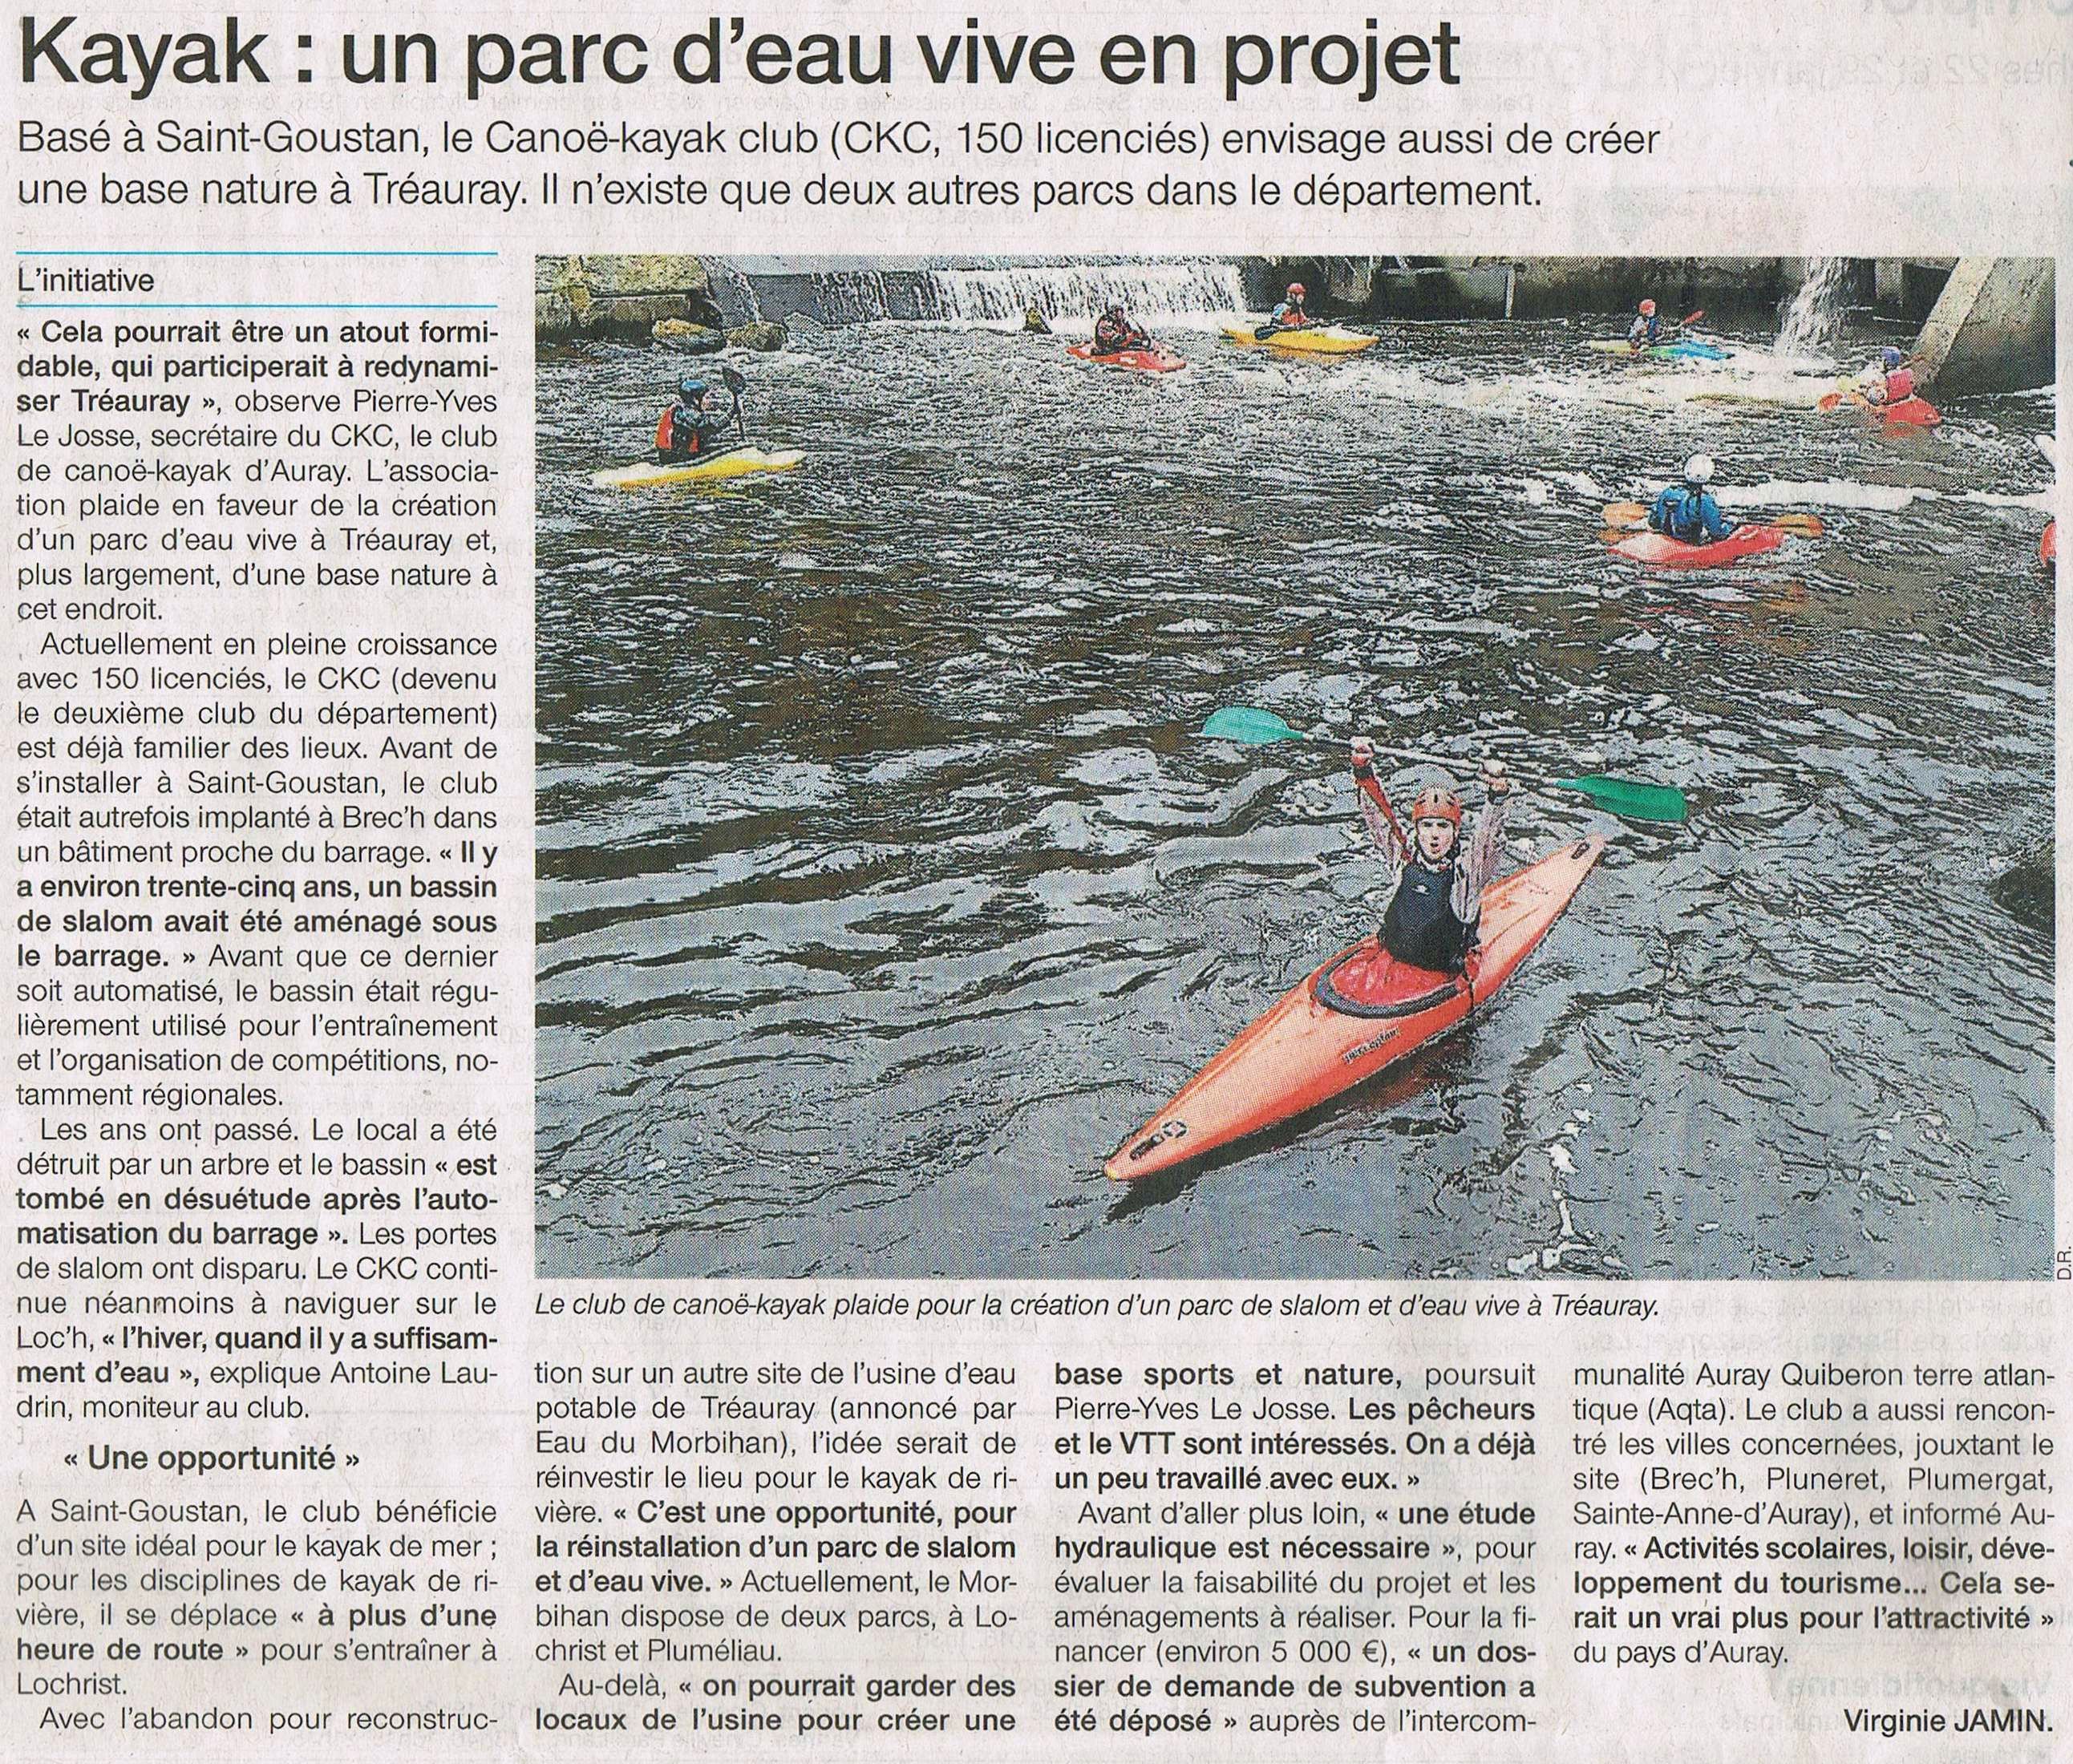 Kayak : un parc d'eau vive en projet